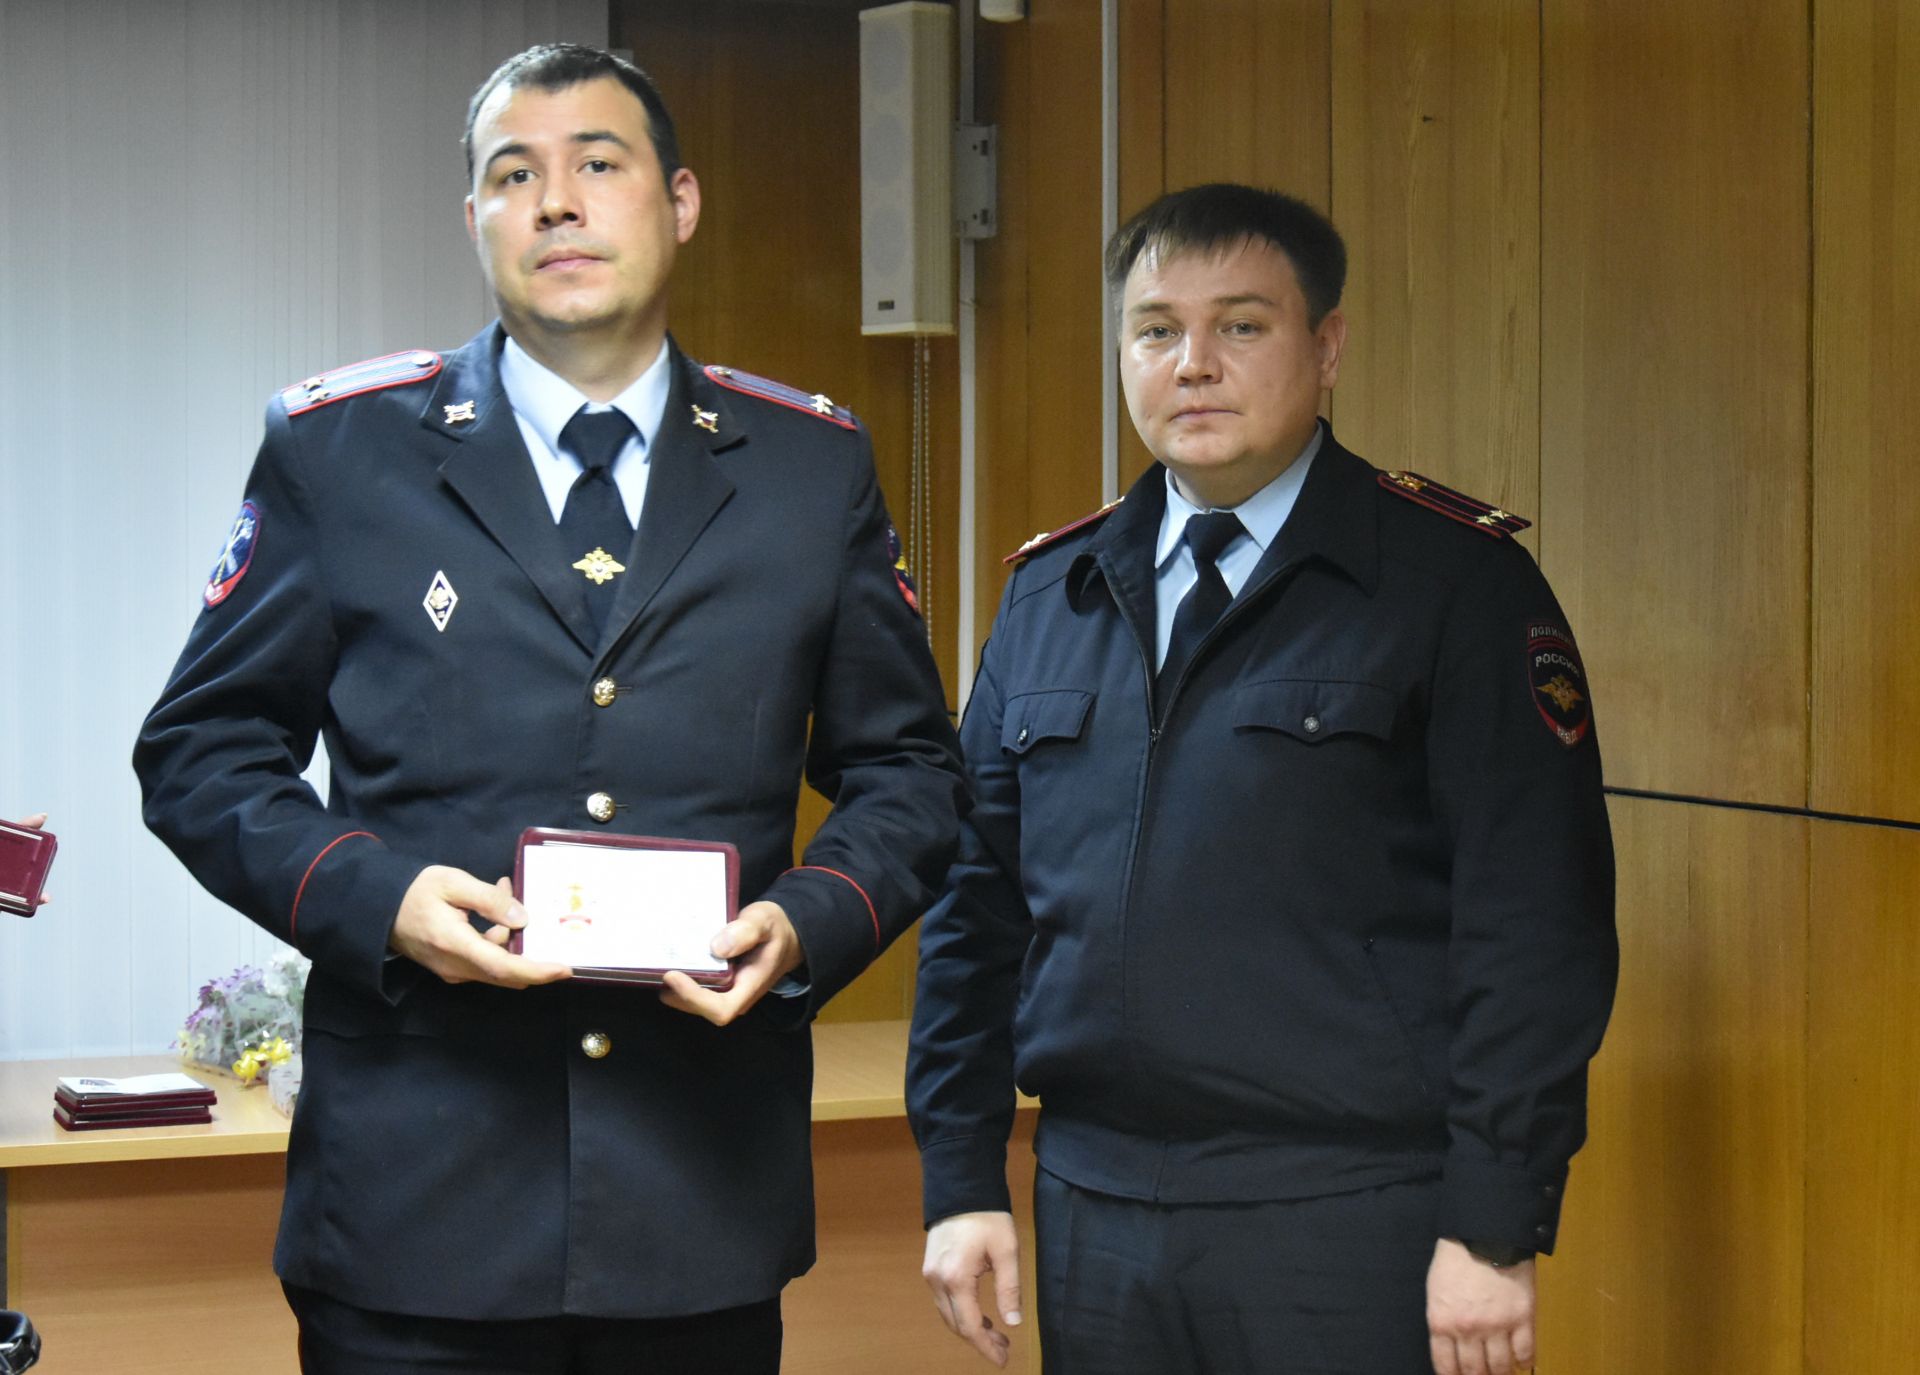 В Заинске вручили награды лучшим сотрудникам полиции